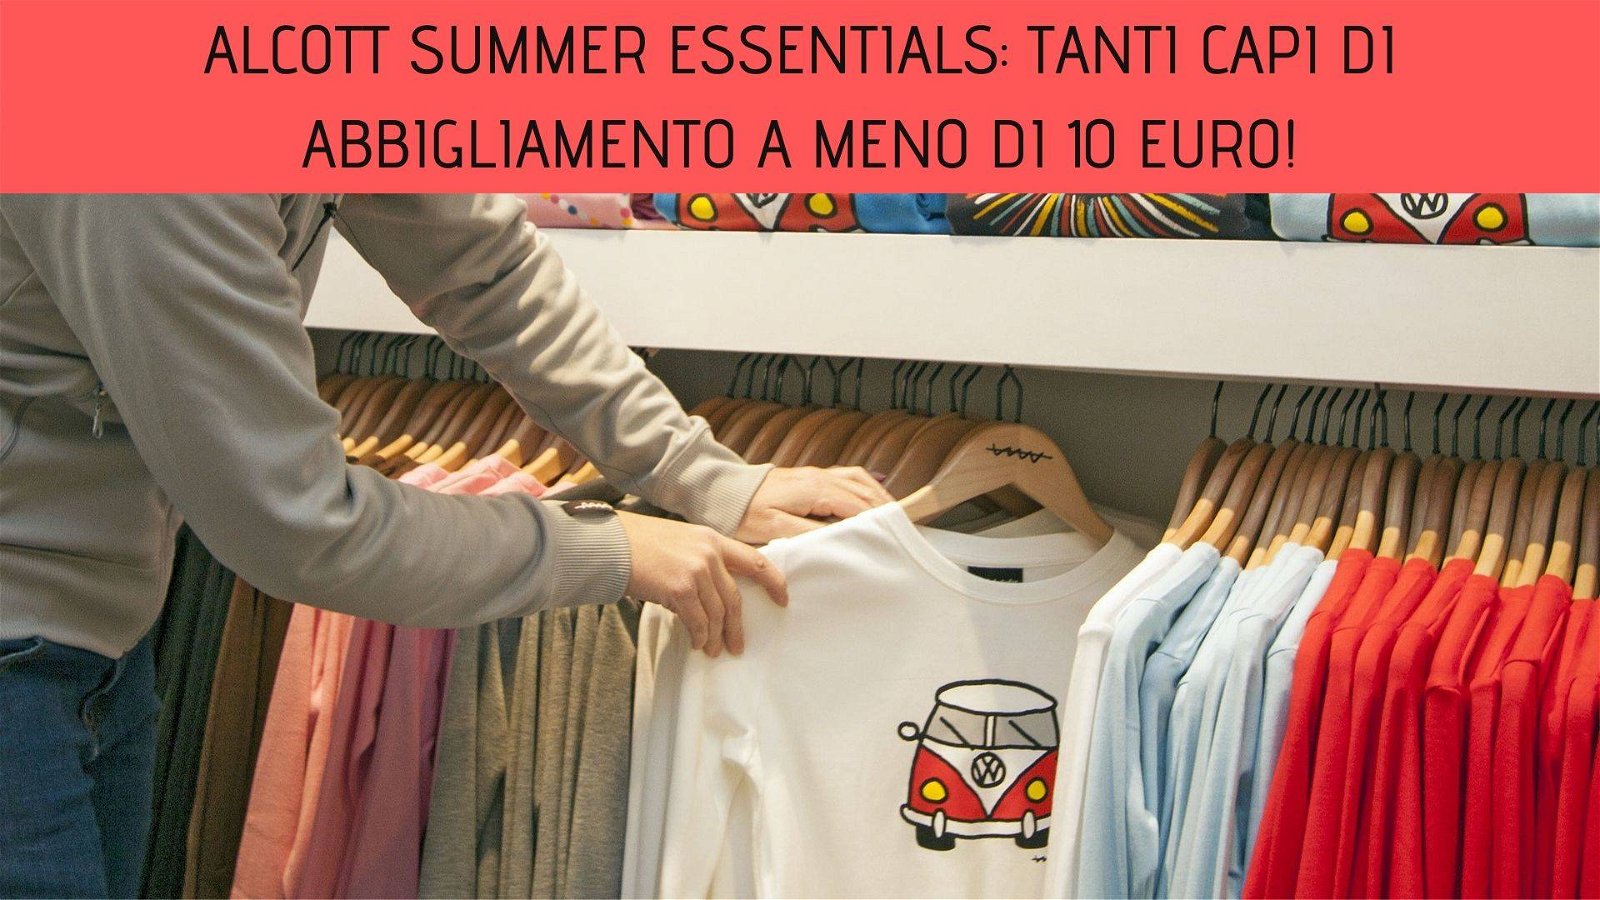 Immagine di Alcott Summer Essentials: tanti capi di abbigliamento a meno di 10 euro!